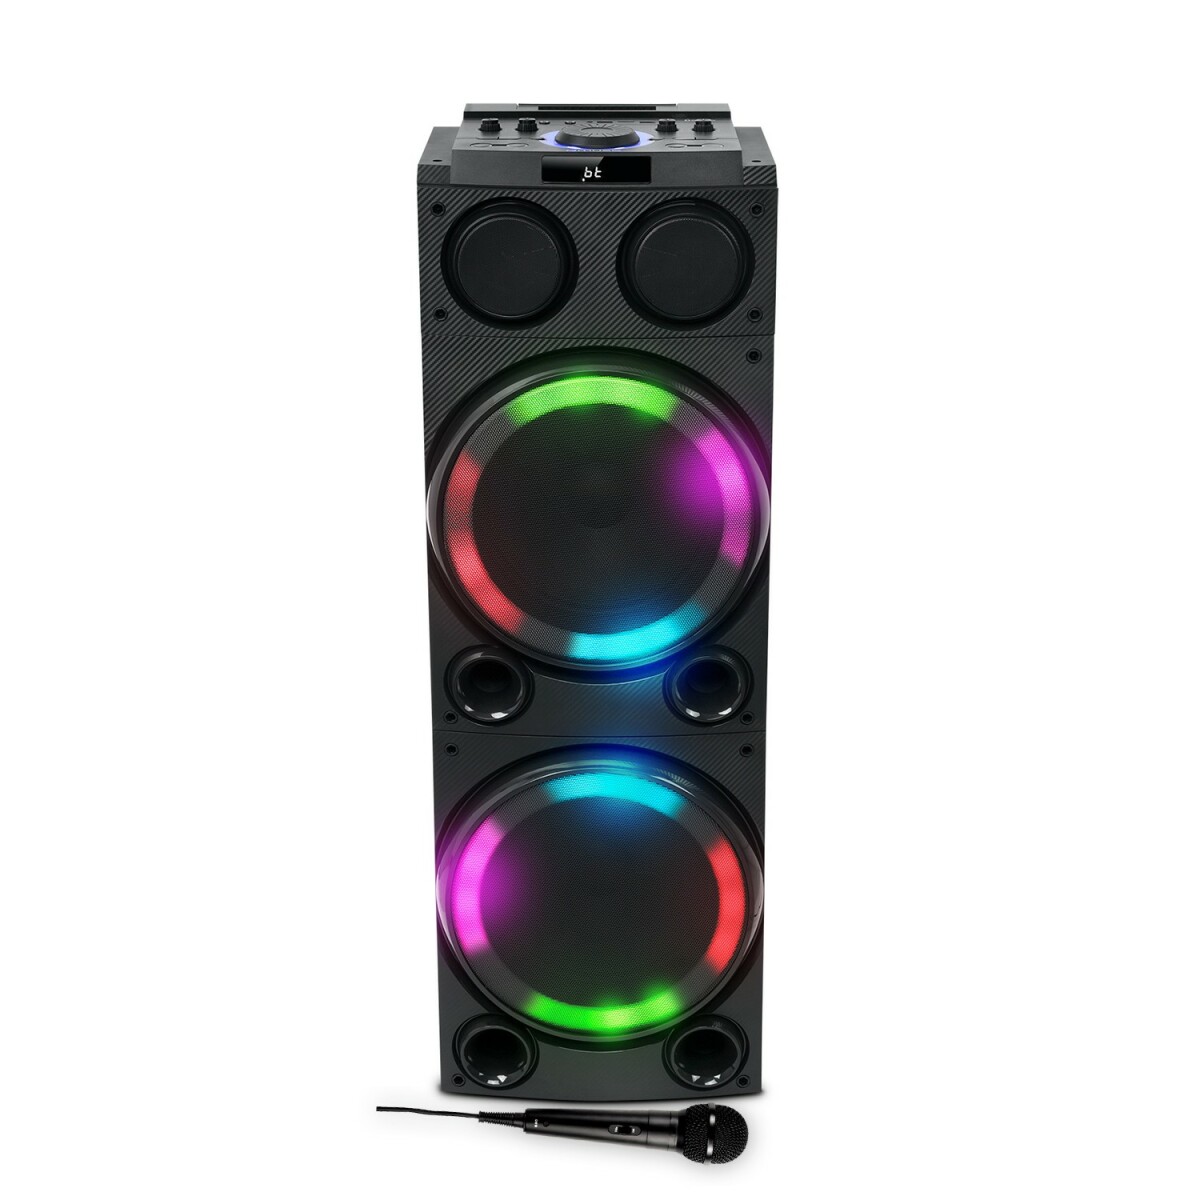 Enceinte Sono Party Box Muse M-1982 DJ - 600W - Ambiance Effet LED multicolore - USB/Bluetooth / Entrées AUX/Micro/Guitare